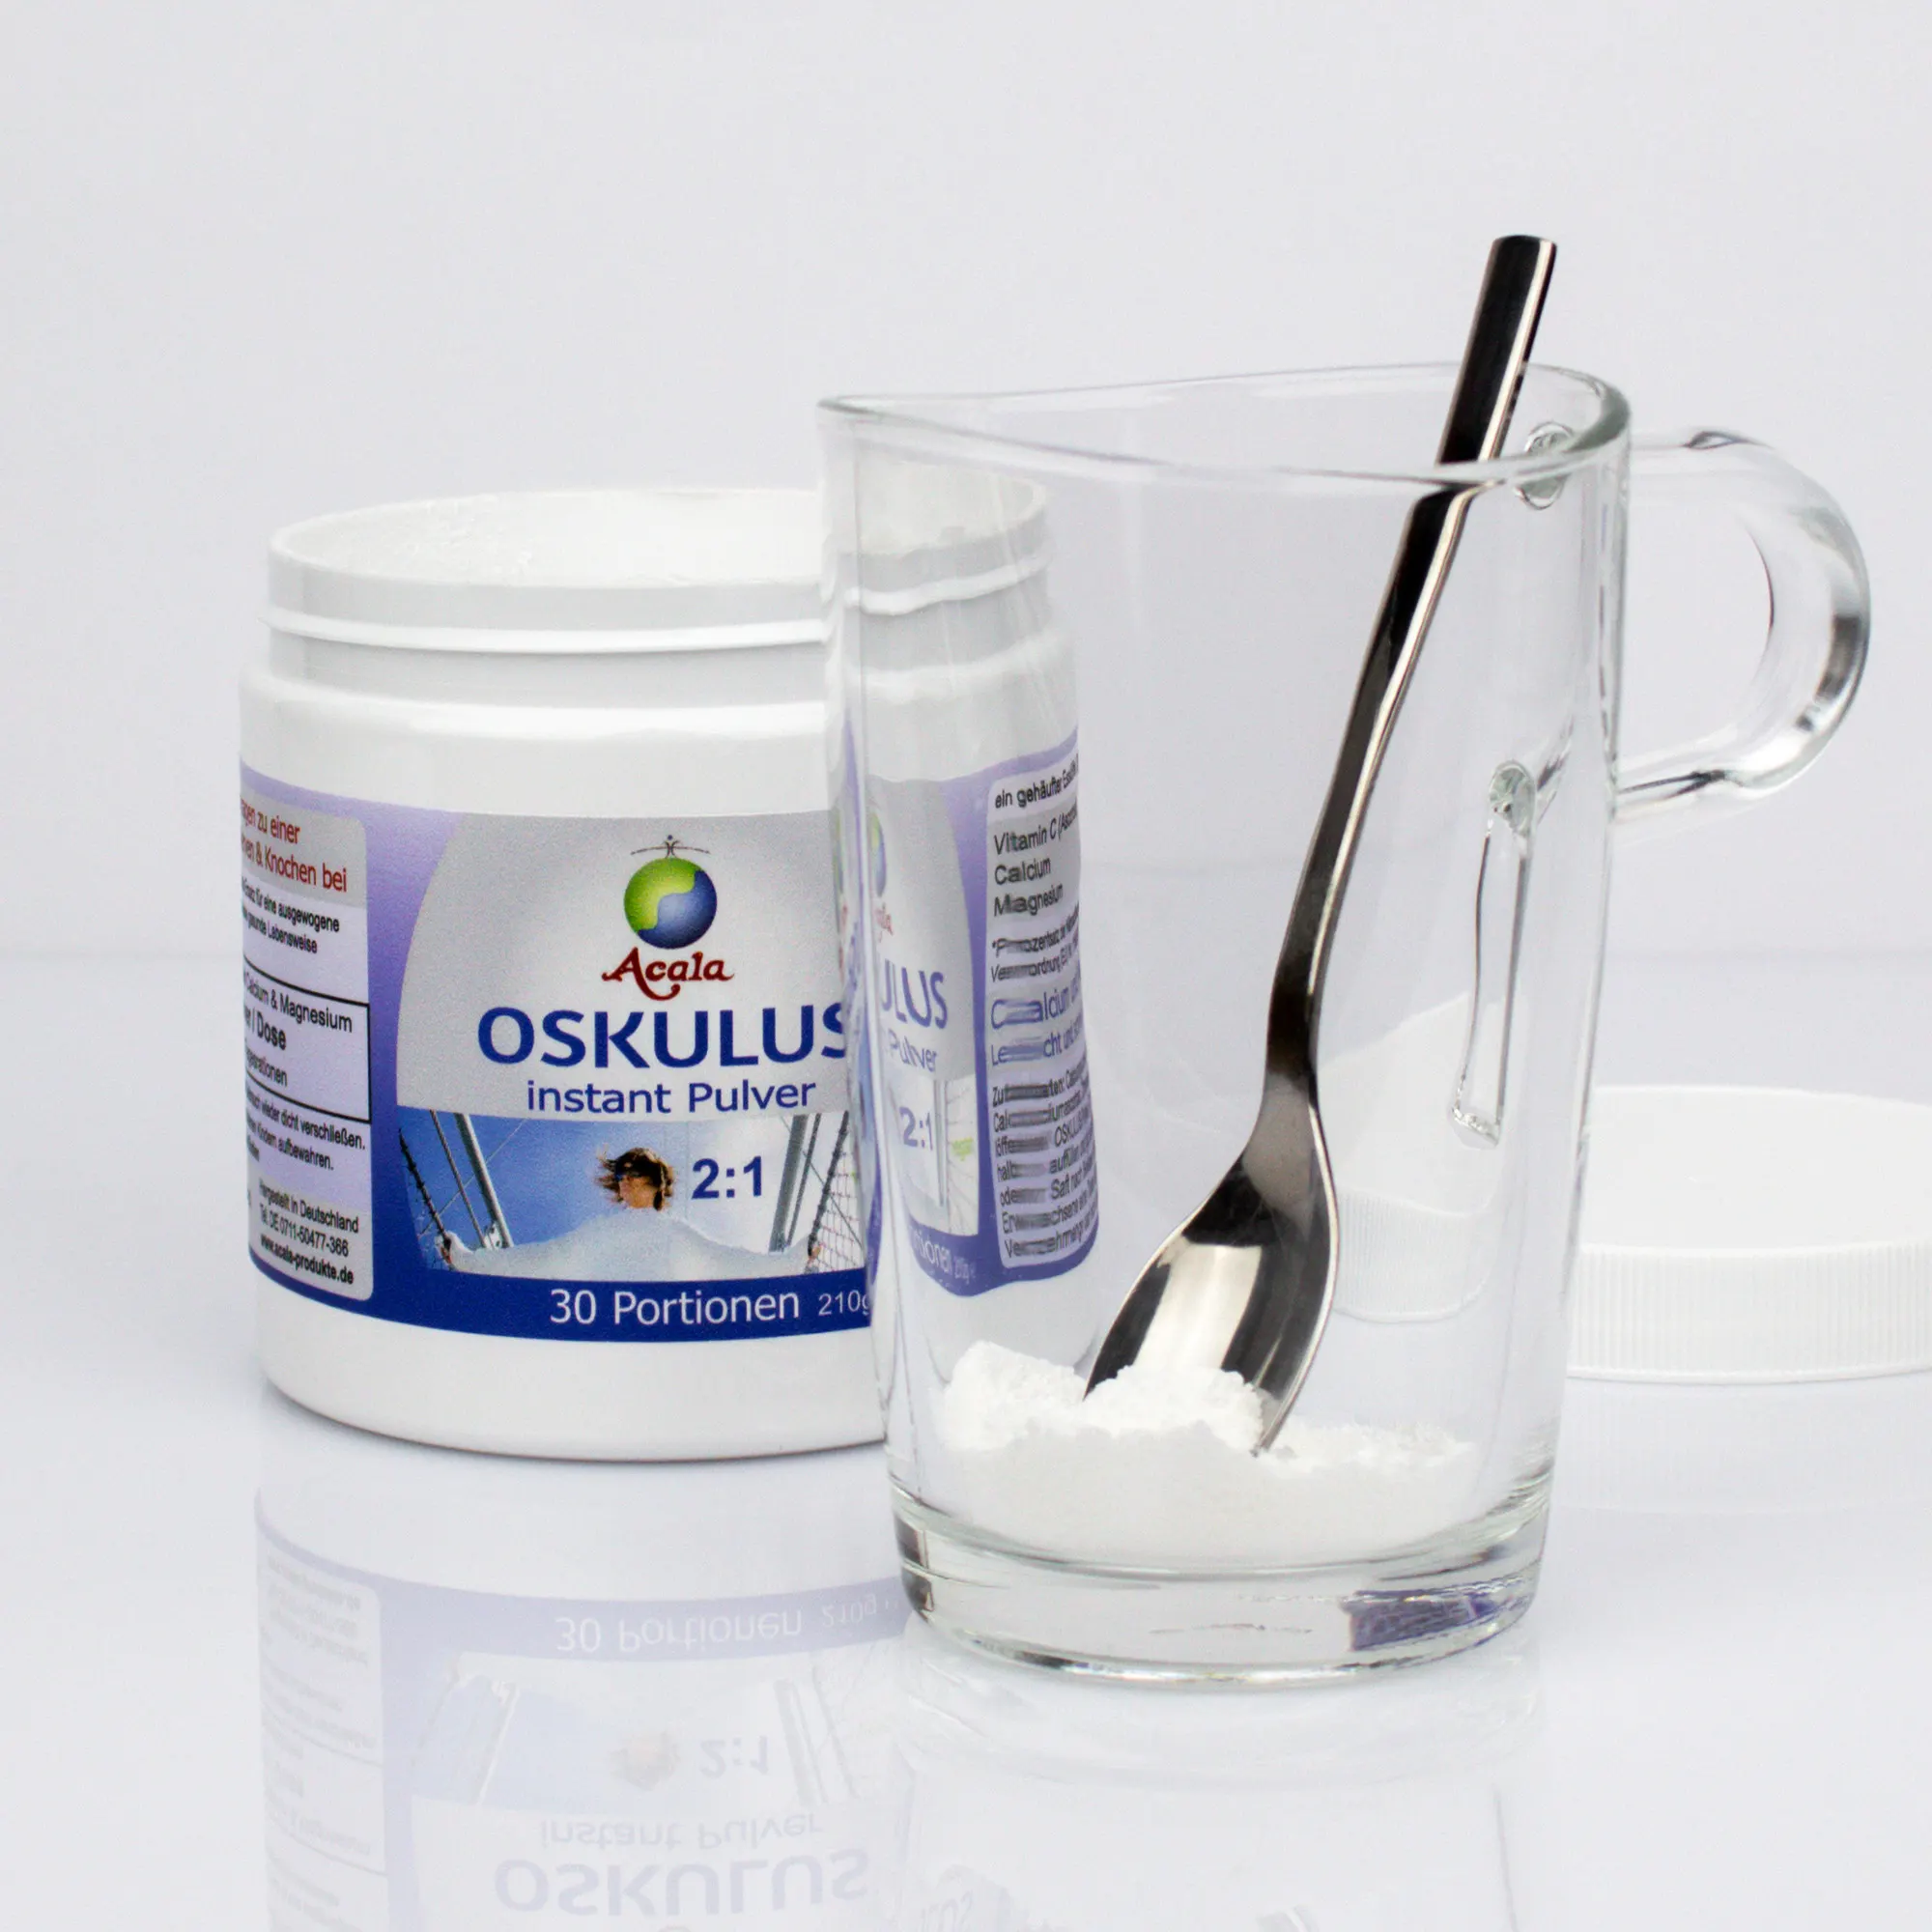 Links steht eine geöffnete Dose Oskulus 2:1. Rechts davor steht ein Glas mit einer Portion Oskulus-Pulver und einem Teelöffel darin. Im Hintergrund liegt rechts der weiße Schraubdeckel.